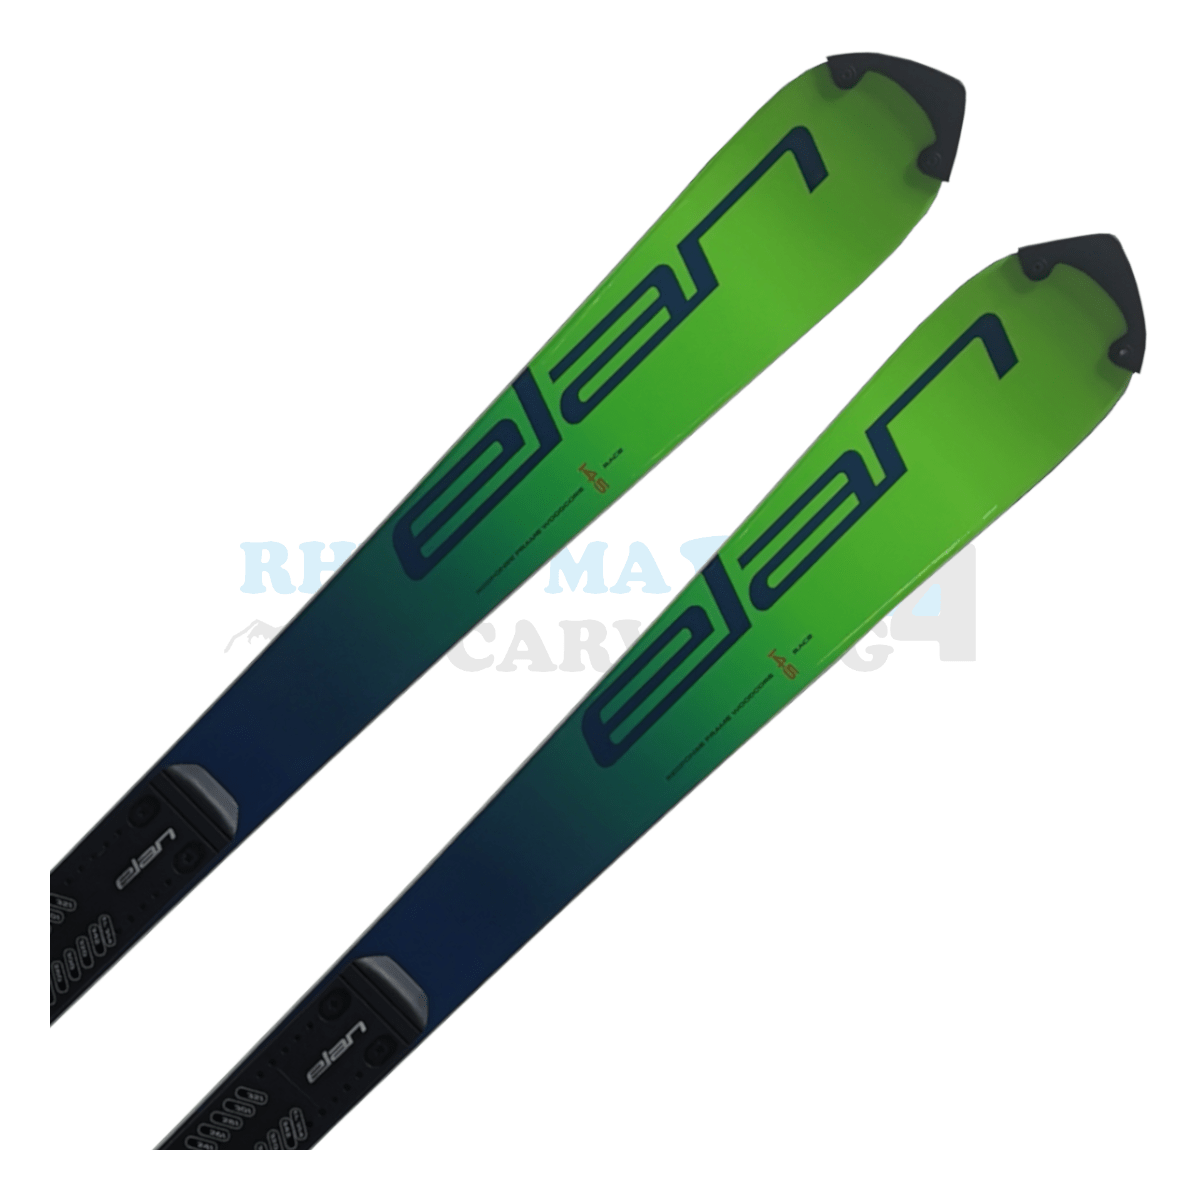 Elan SLX Junior mit Platte aus dem Jahr 2020, der Ski ist in der Farbe grün, die Ansicht des oberen Teils des Skis